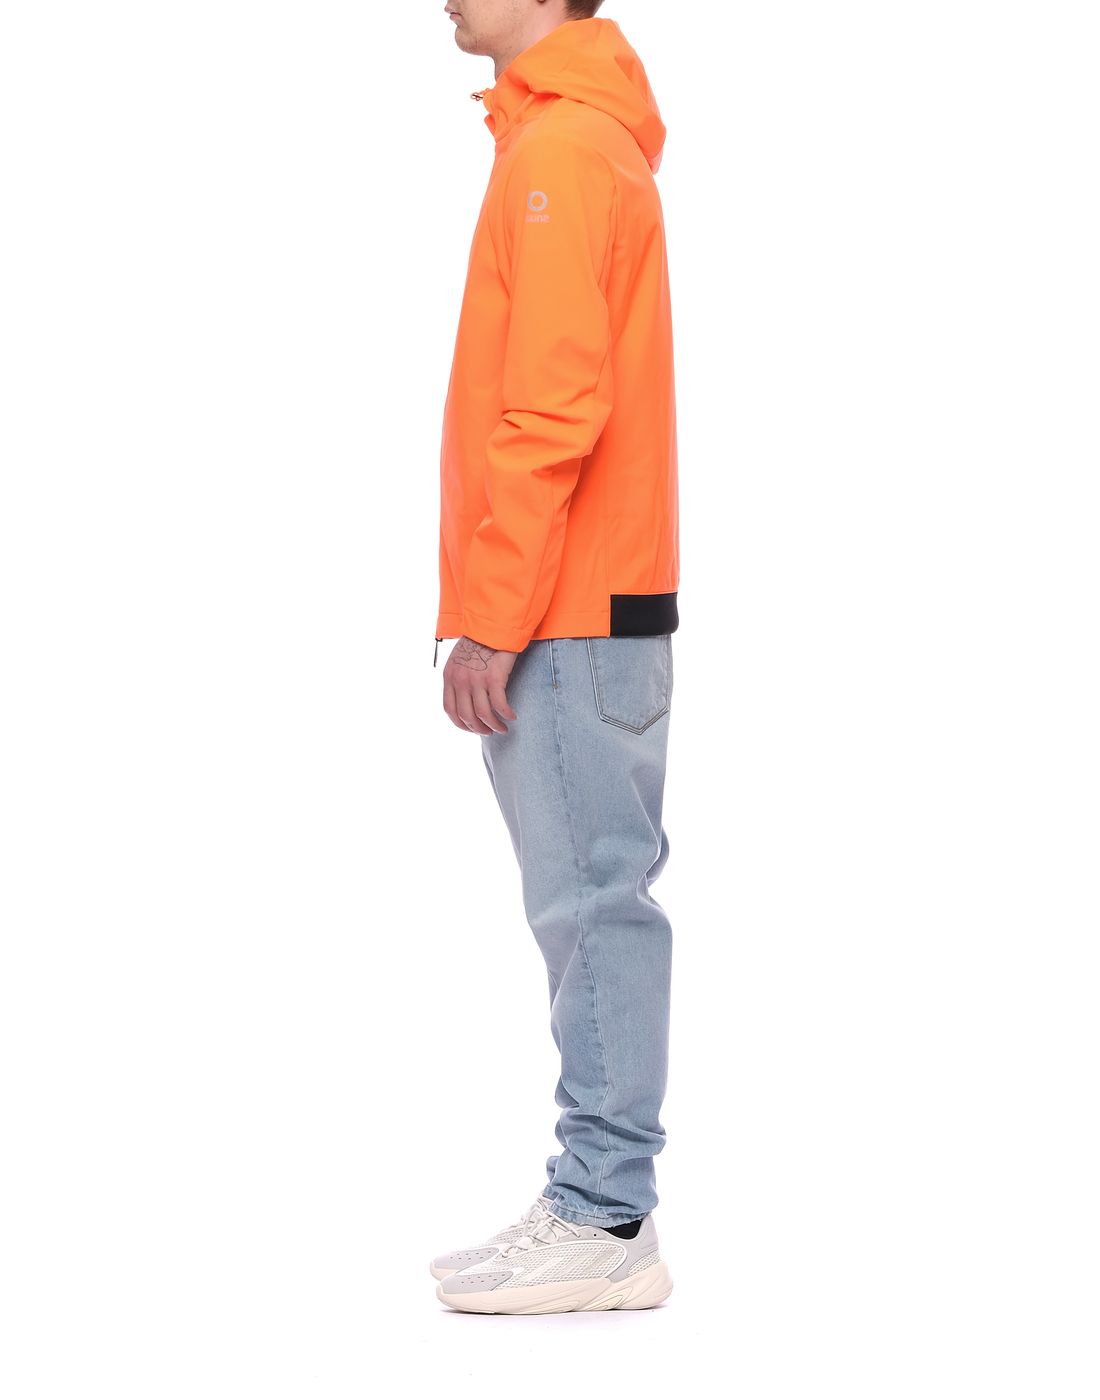 Jacke für Mann GBS01003 U Orange Fluo Suns